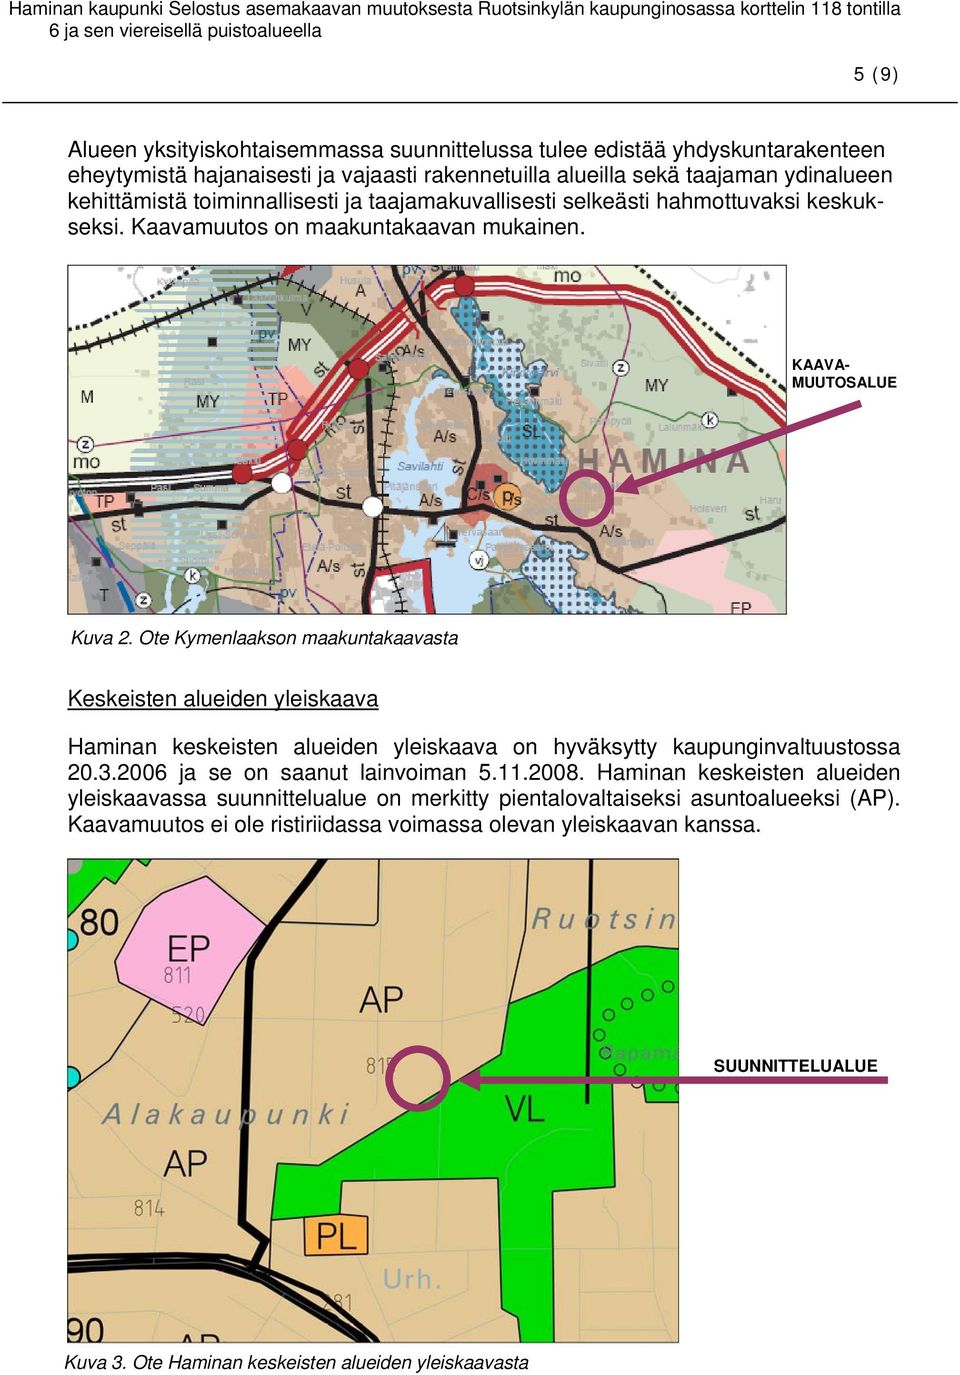 Ote Kymenlaakson maakuntakaavasta Keskeisten alueiden yleiskaava Haminan keskeisten alueiden yleiskaava on hyväksytty kaupunginvaltuustossa 20.3.2006 ja se on saanut lainvoiman 5.11.2008.